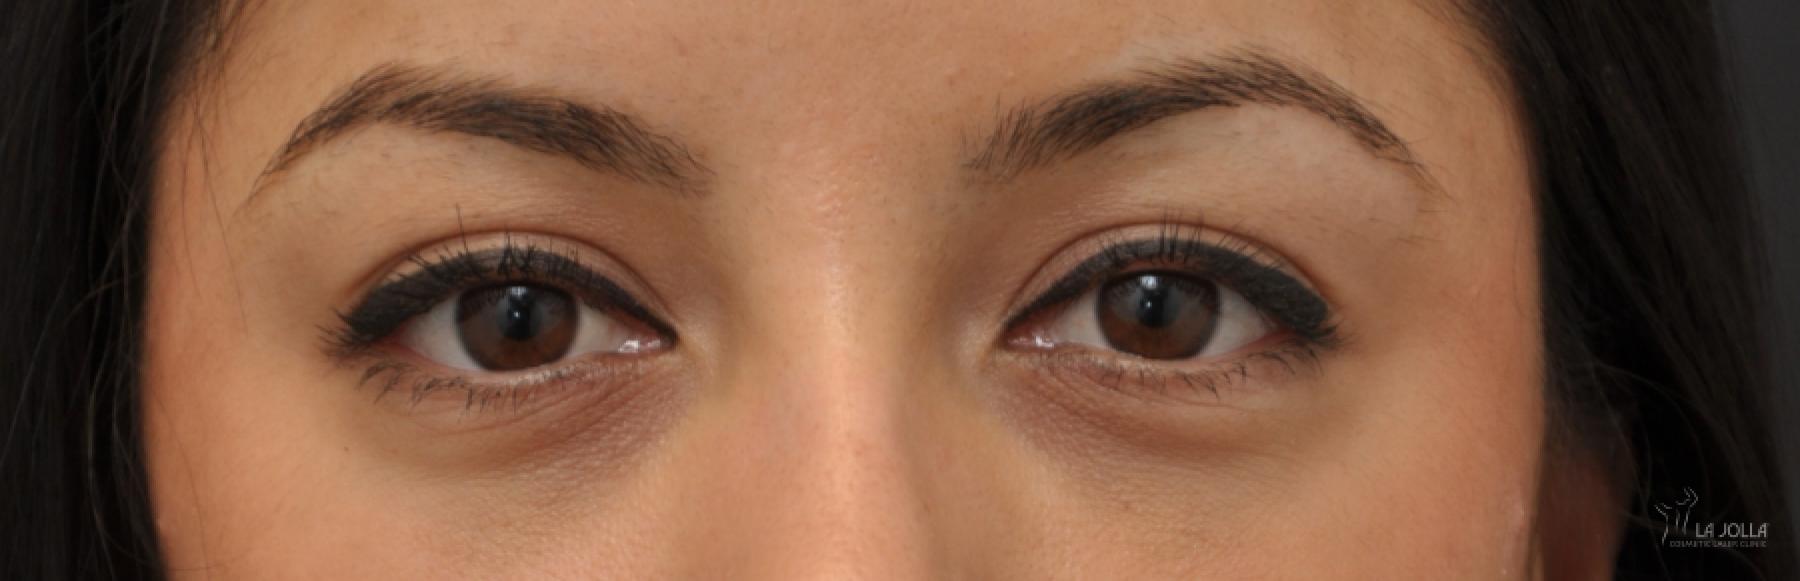 Under Eye Filler: Patient 4 - After 1